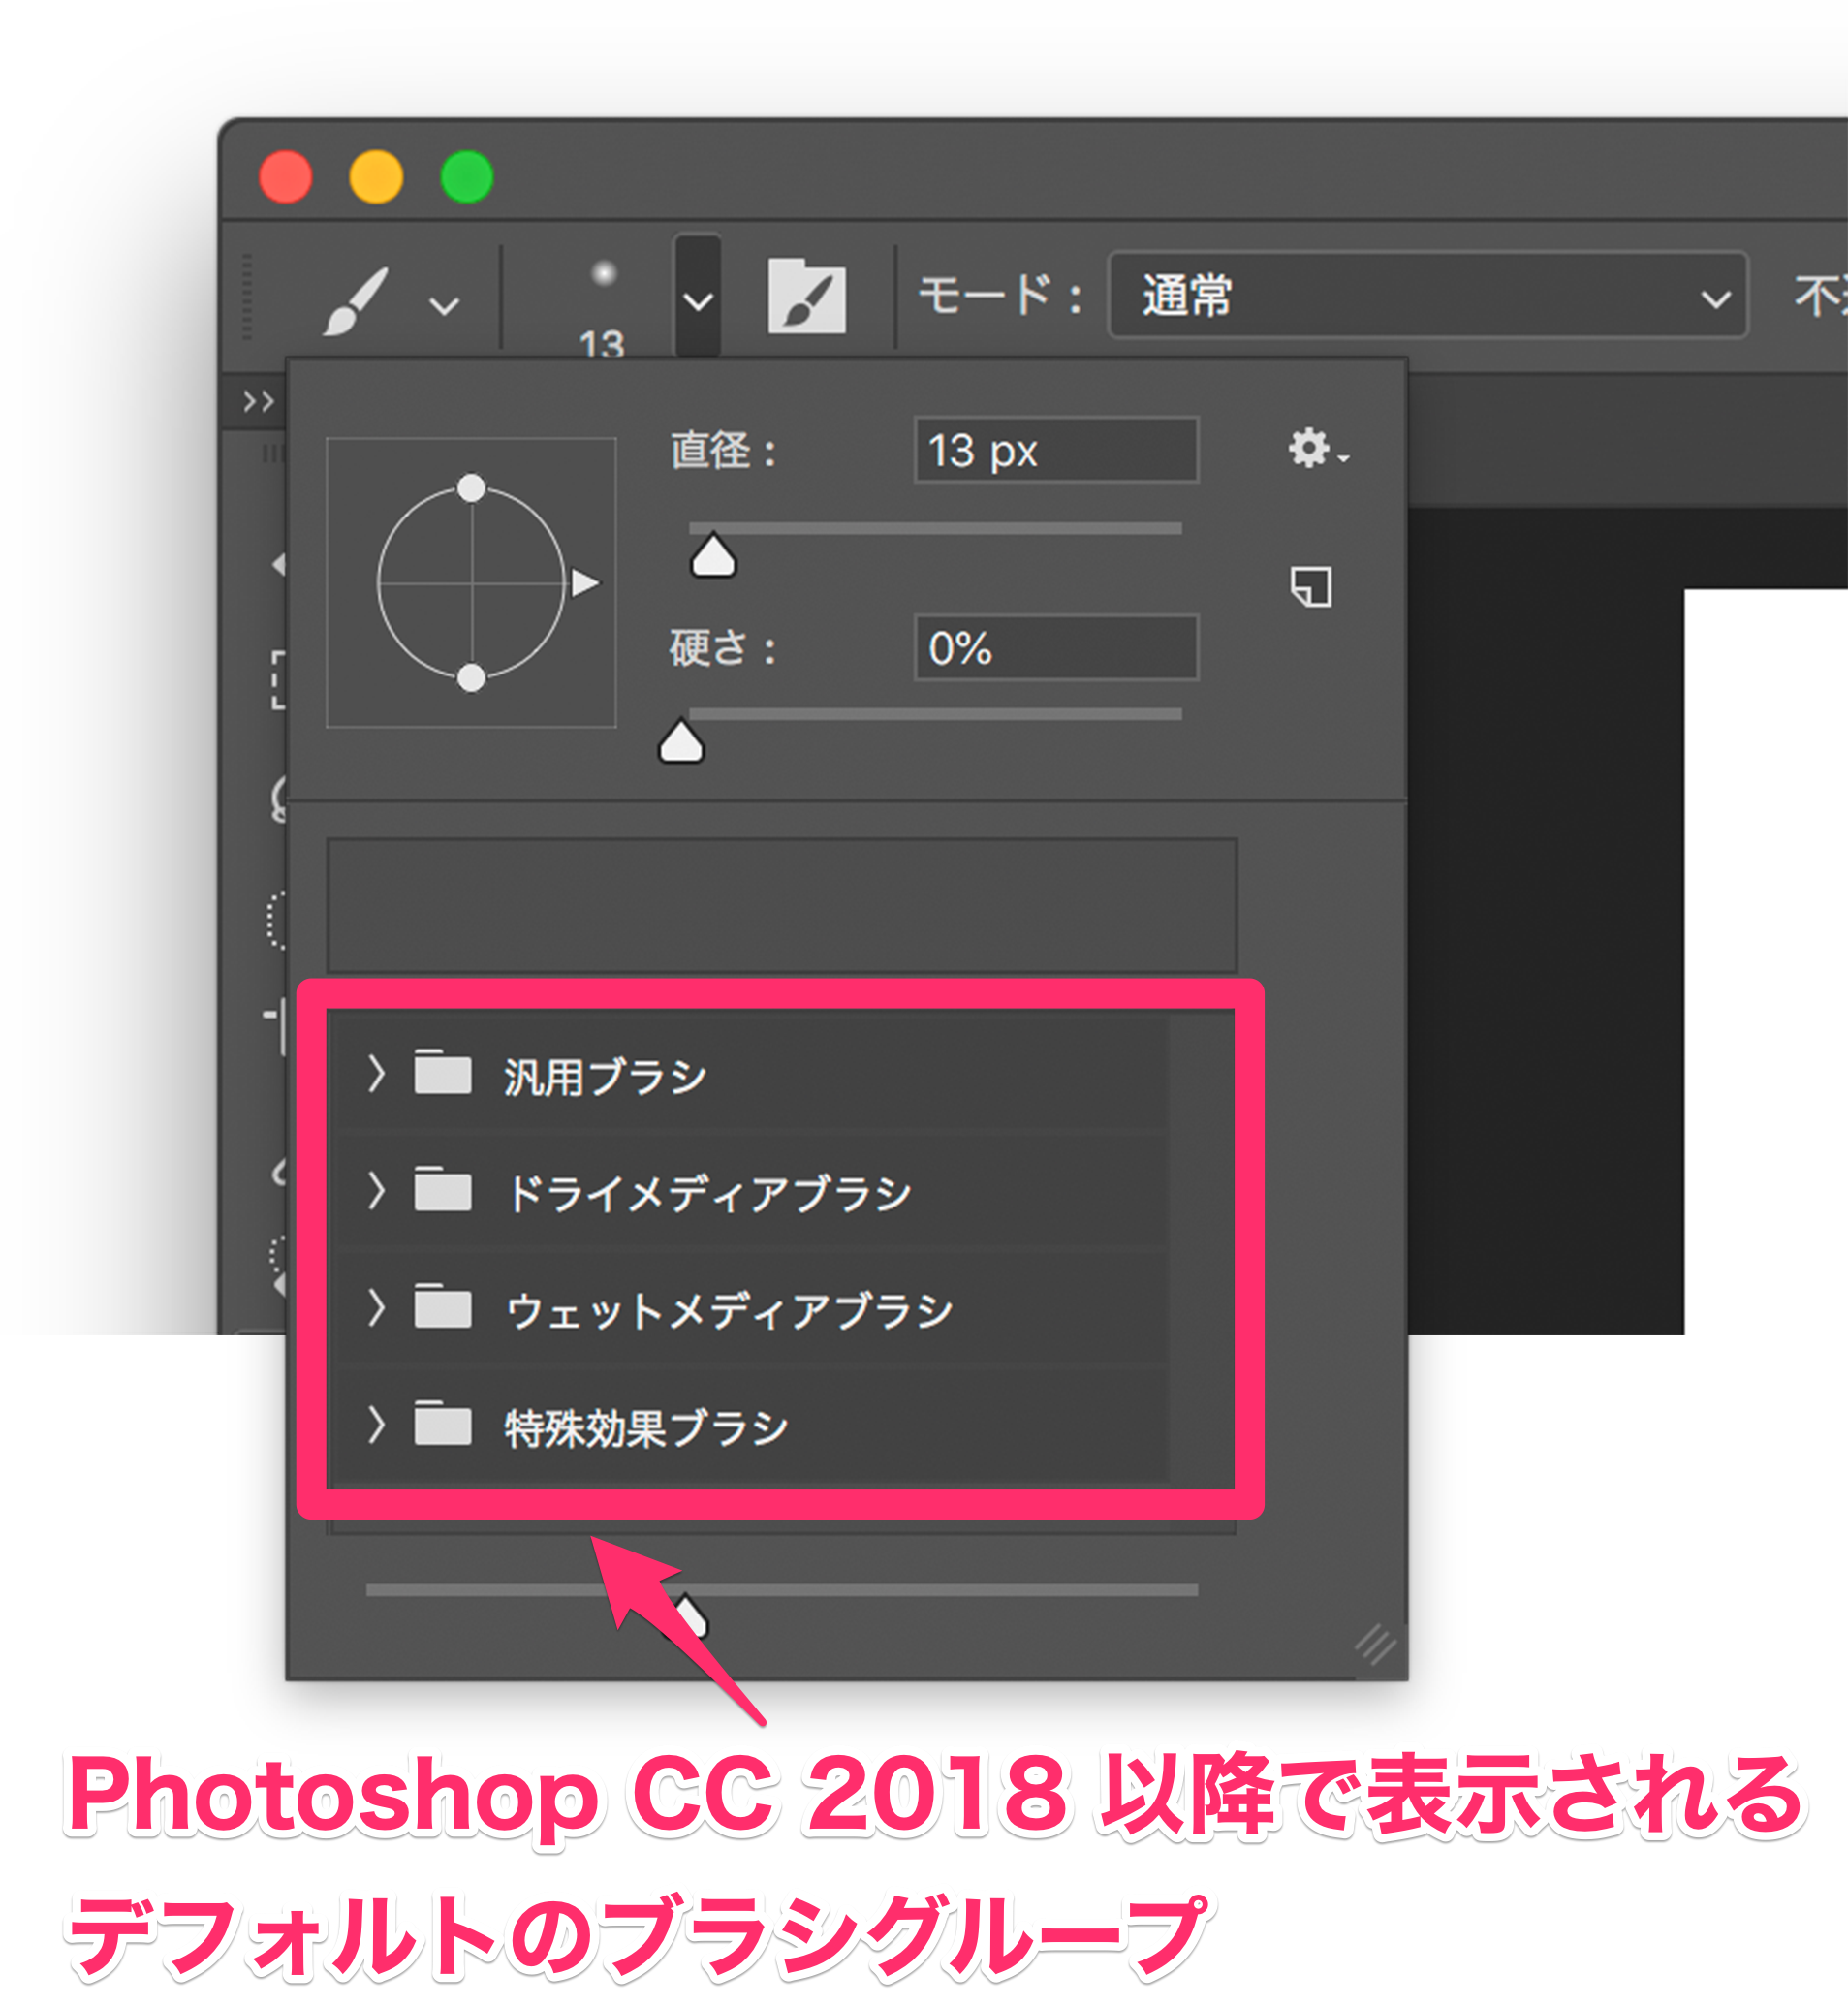 以前の Photoshop のバージョンで使用できていたブラシがありません Photoshop Cc 2018 Cc 2019 Too クリエイターズfaq 株式会社too